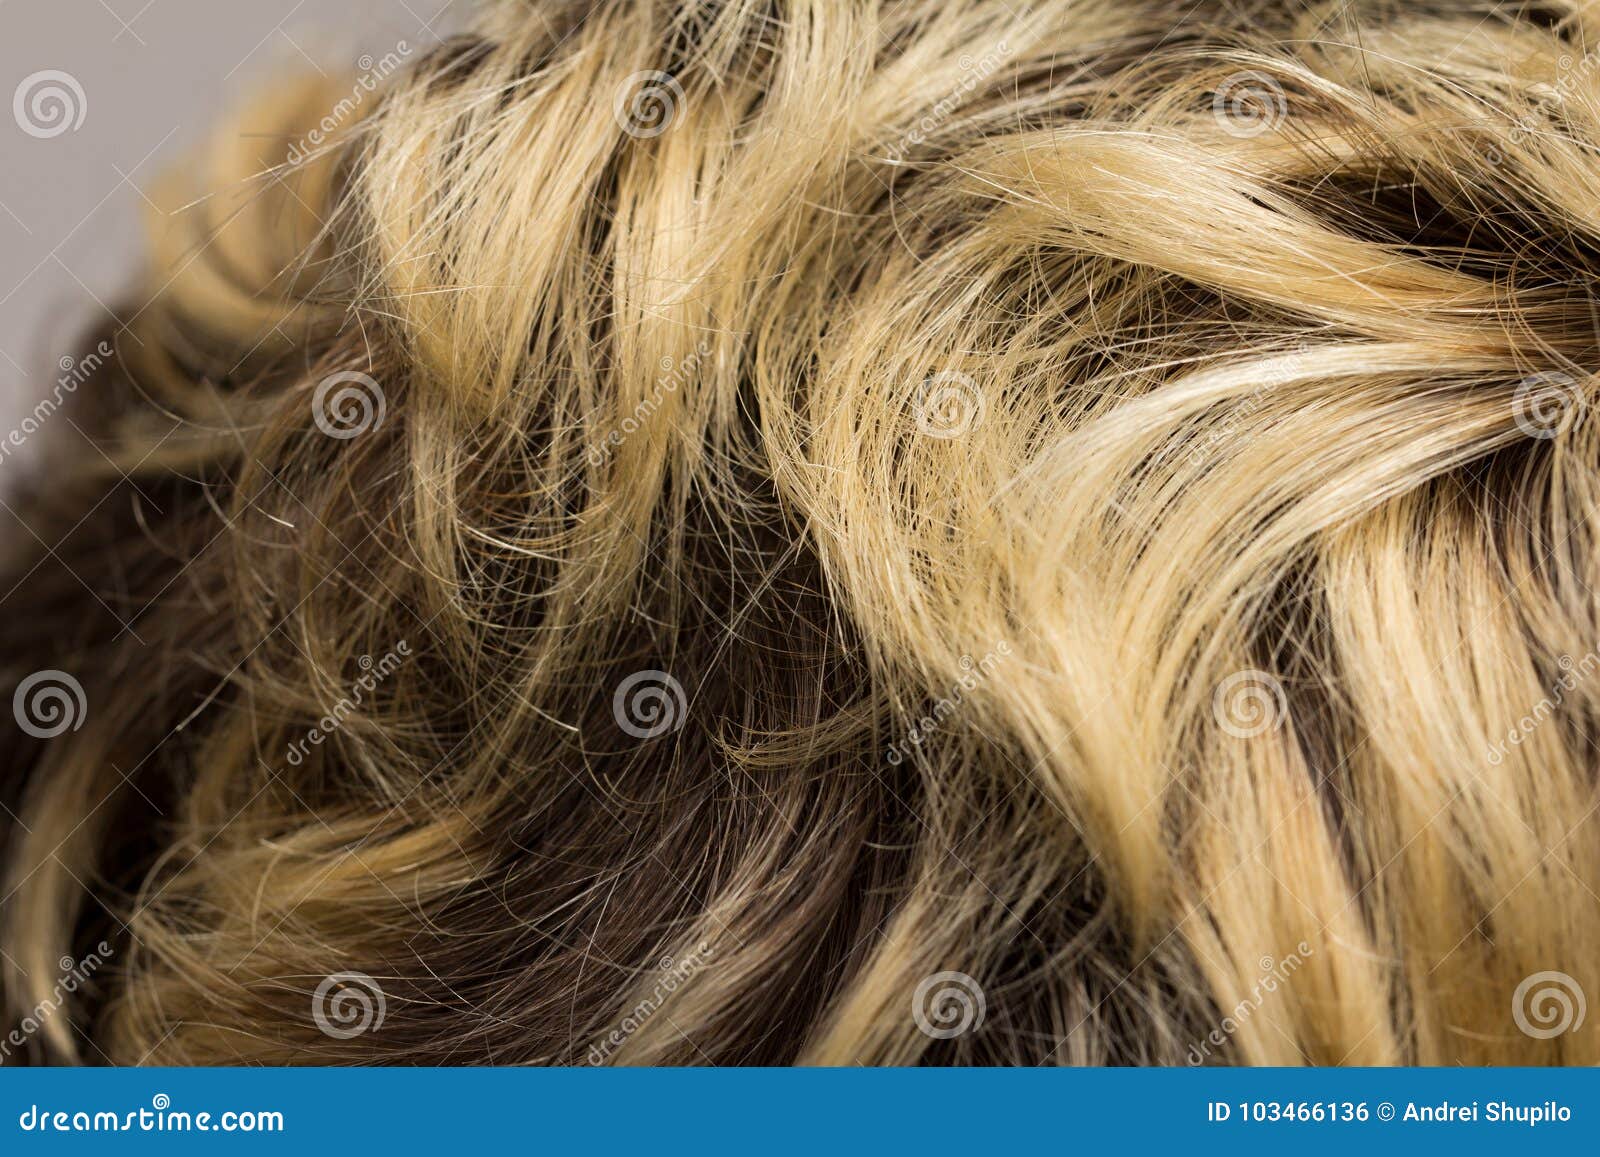 1. Irish blonde hair with subtle streaks - wide 1